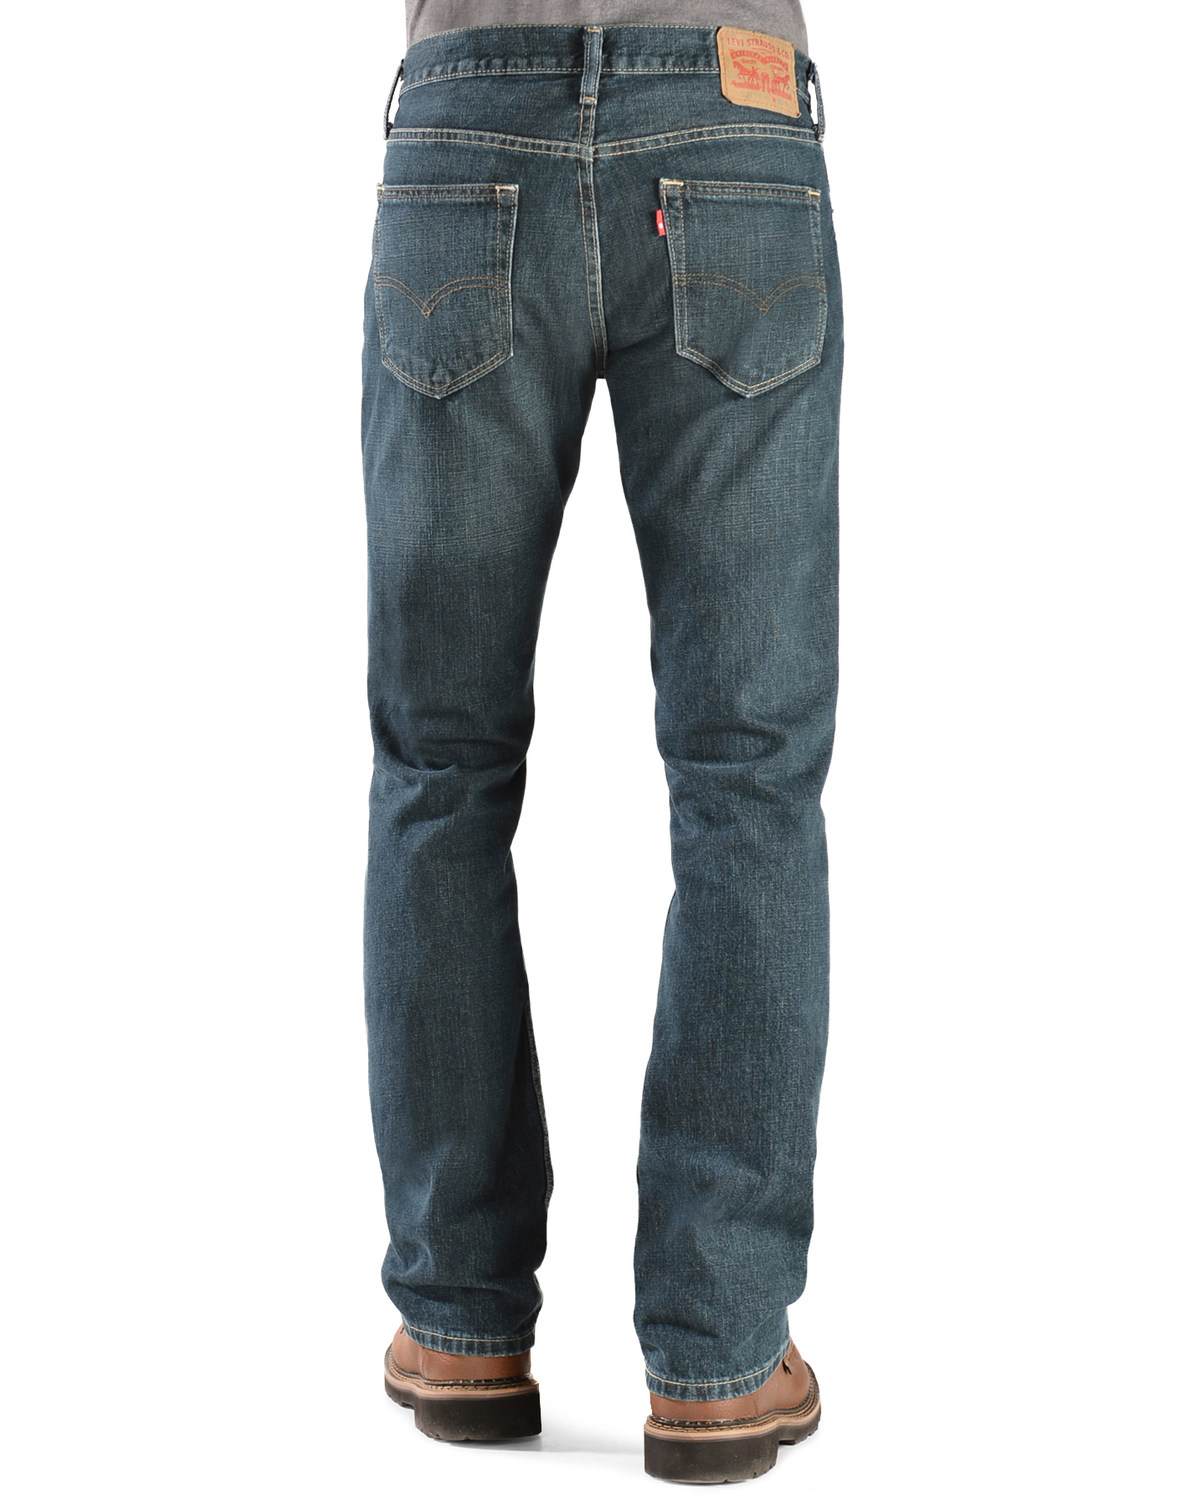 mens low rise jeans levis off 67 